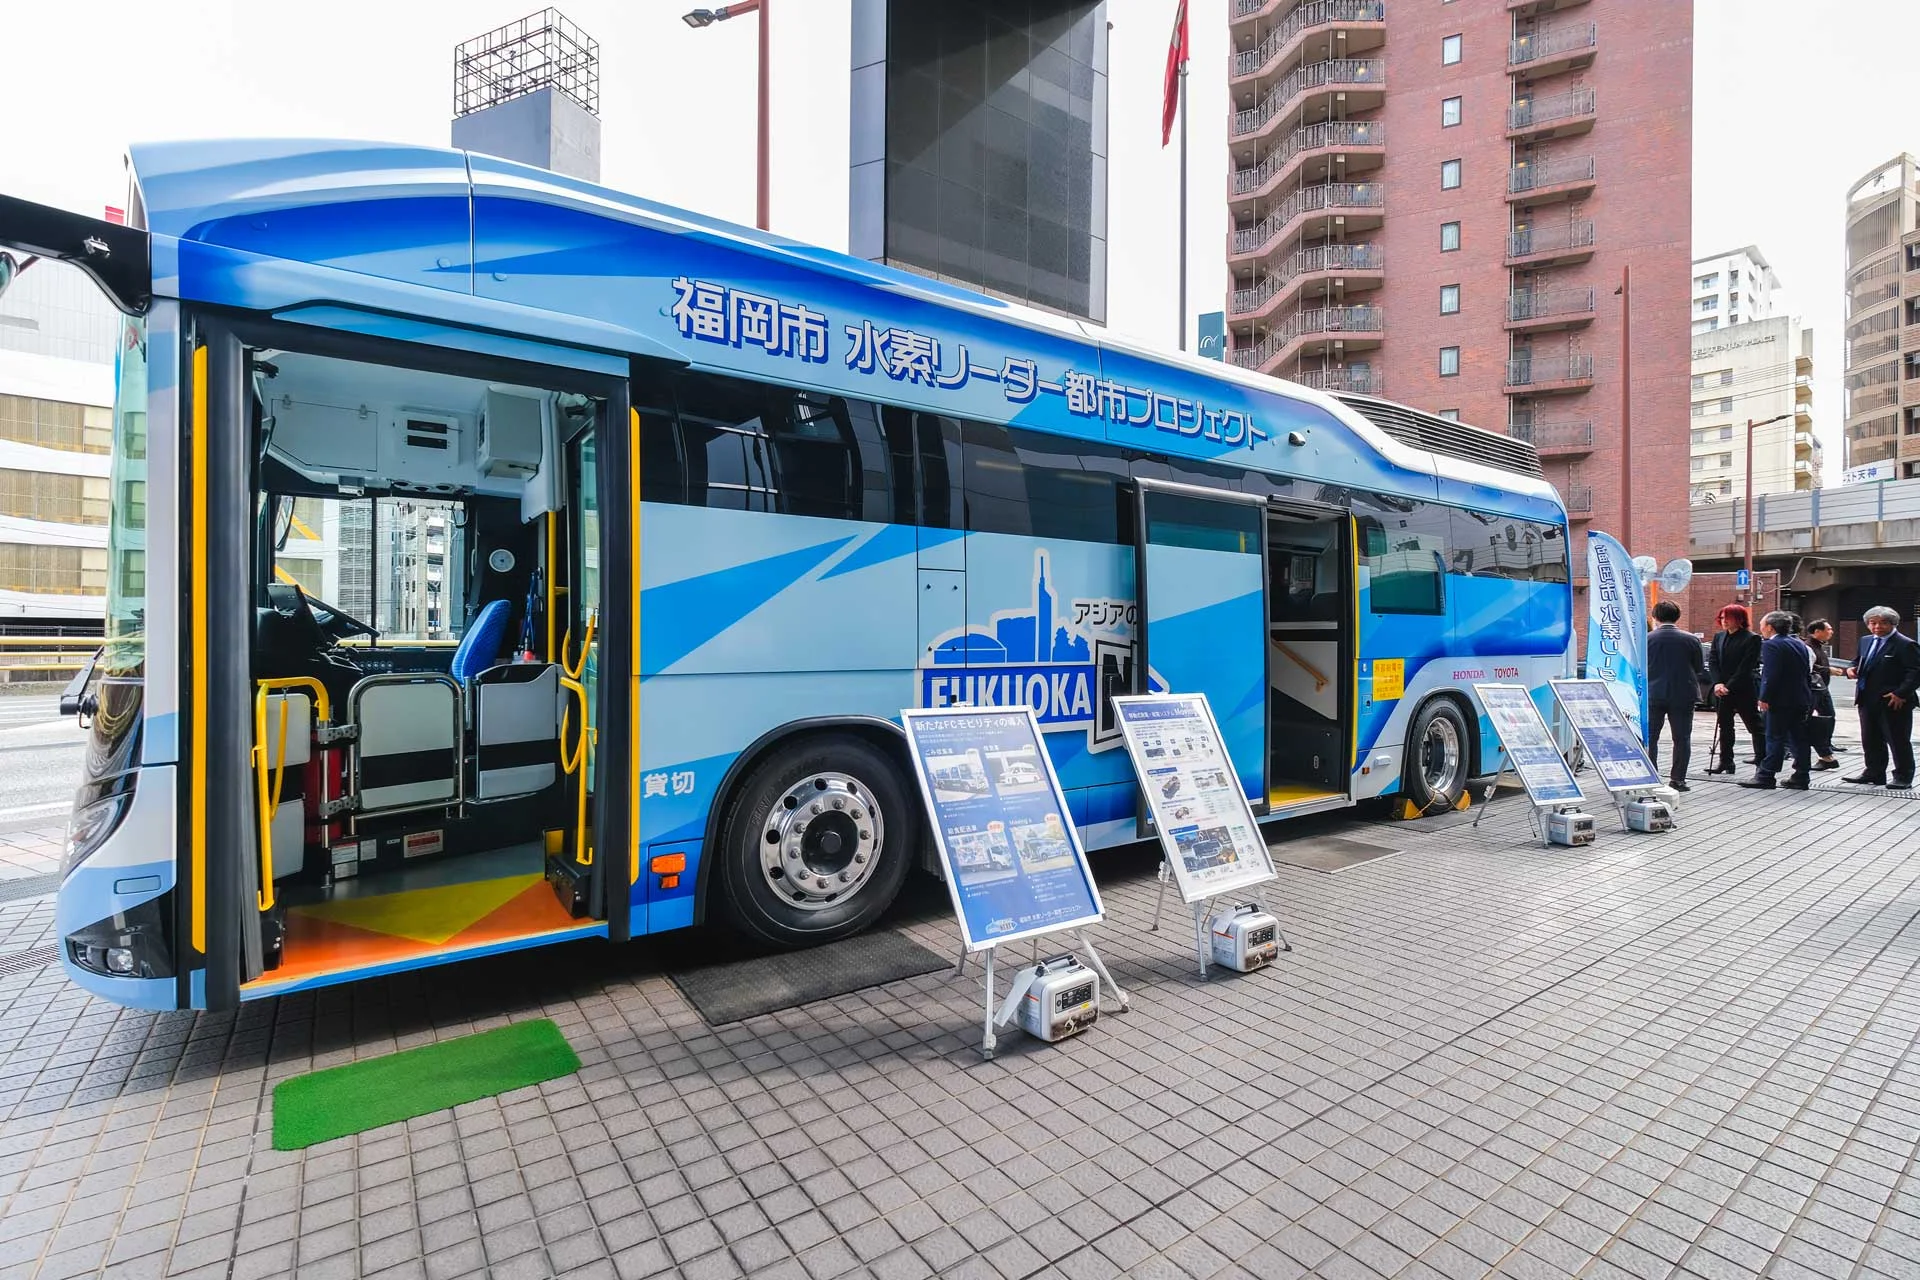 福岡市からは、水素で発電し、電力供給もできる燃料電池バス「Moving e」が展示され、会場への電力供給も行われていた。（Photo by Keiko Tanabe）